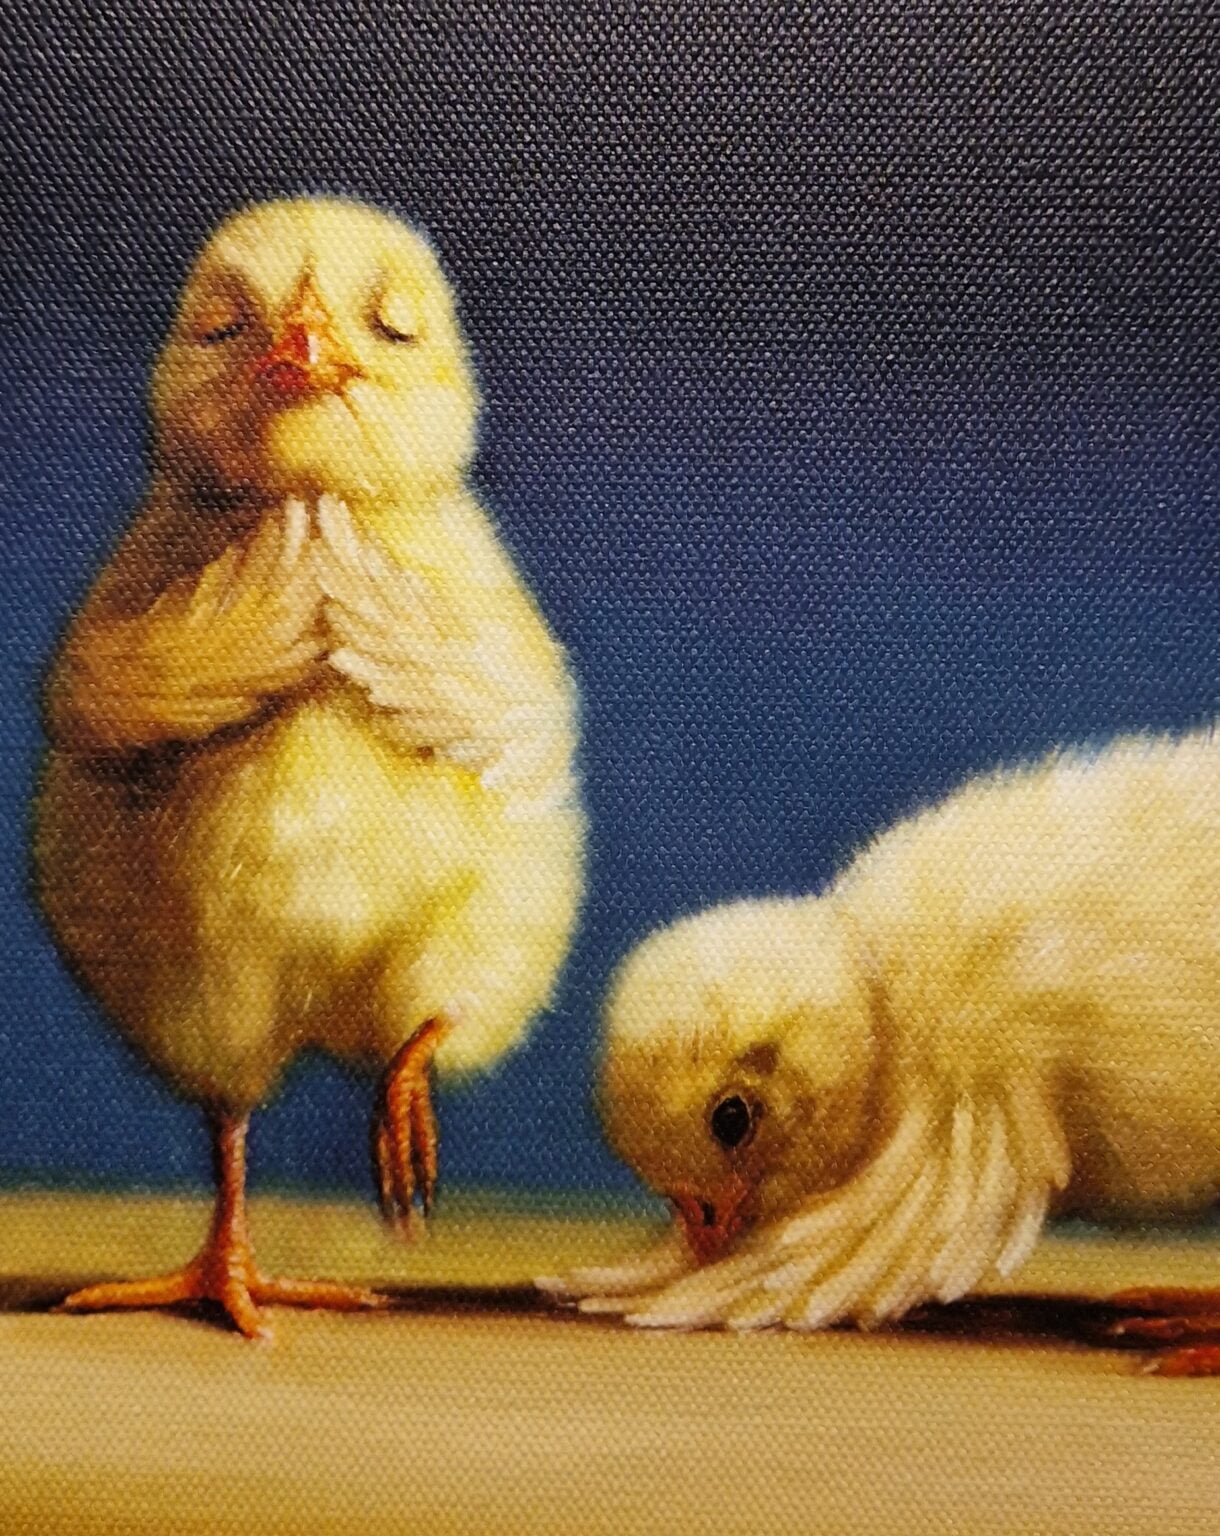 twee kleine kippen die naast elkaar staan